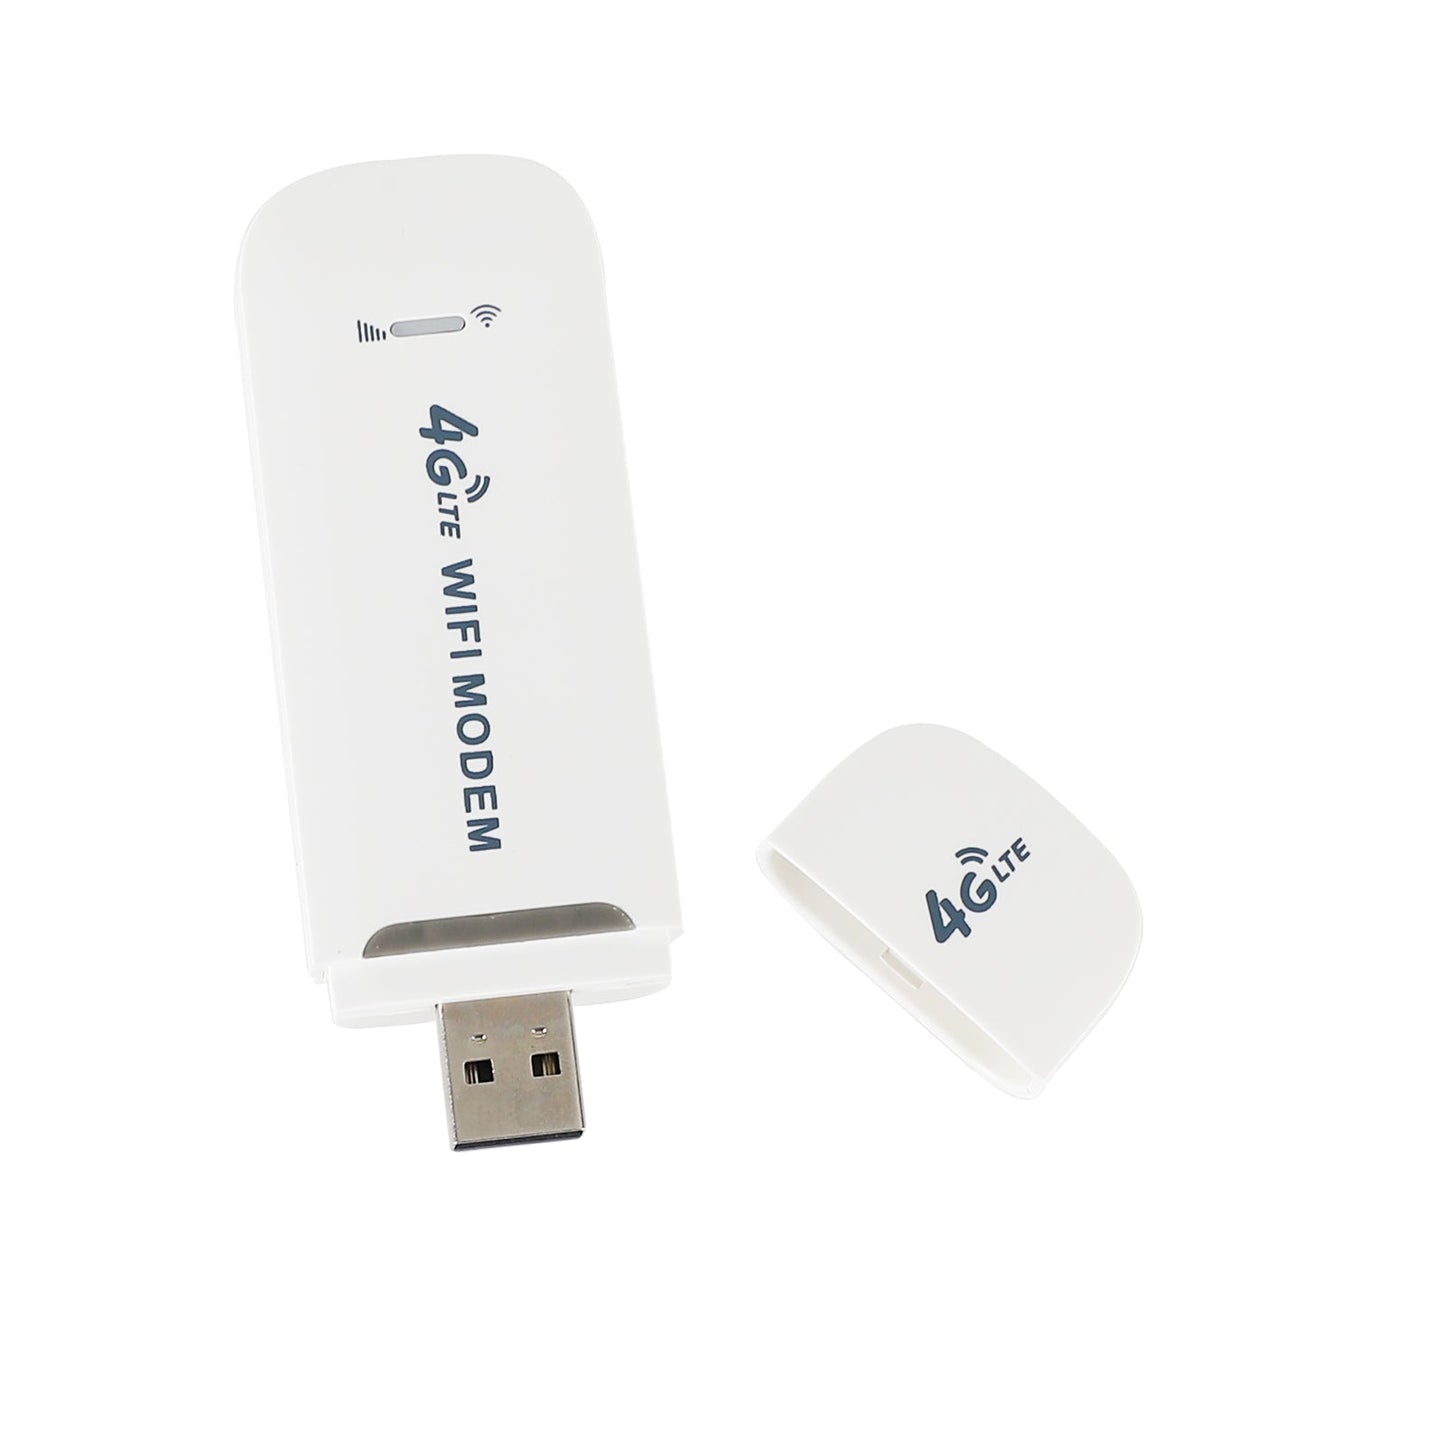 Déduit USB 4G Dongle LTE WiFI Routeur sans fil Modem haut débit mobile Carte SIM